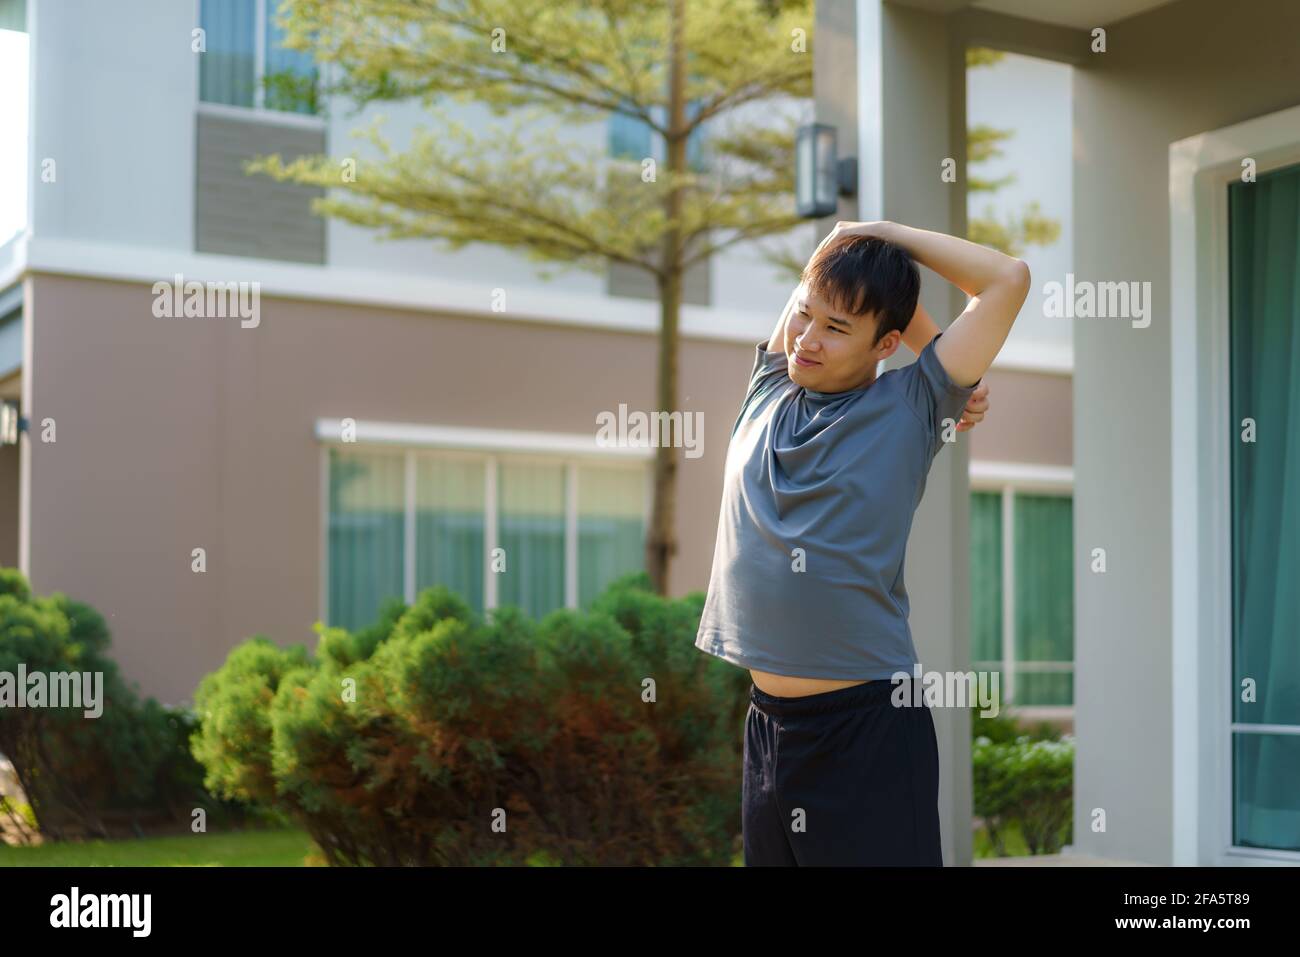 Ein asiatischer Mann, der sich vor oder nach dem Training vor der Haustür in der Nachbarschaft zum Aufwärmen oder Abkühlen ausdehnt, um täglich Gesundheit und Wohlbefinden zu erhalten Stockfoto